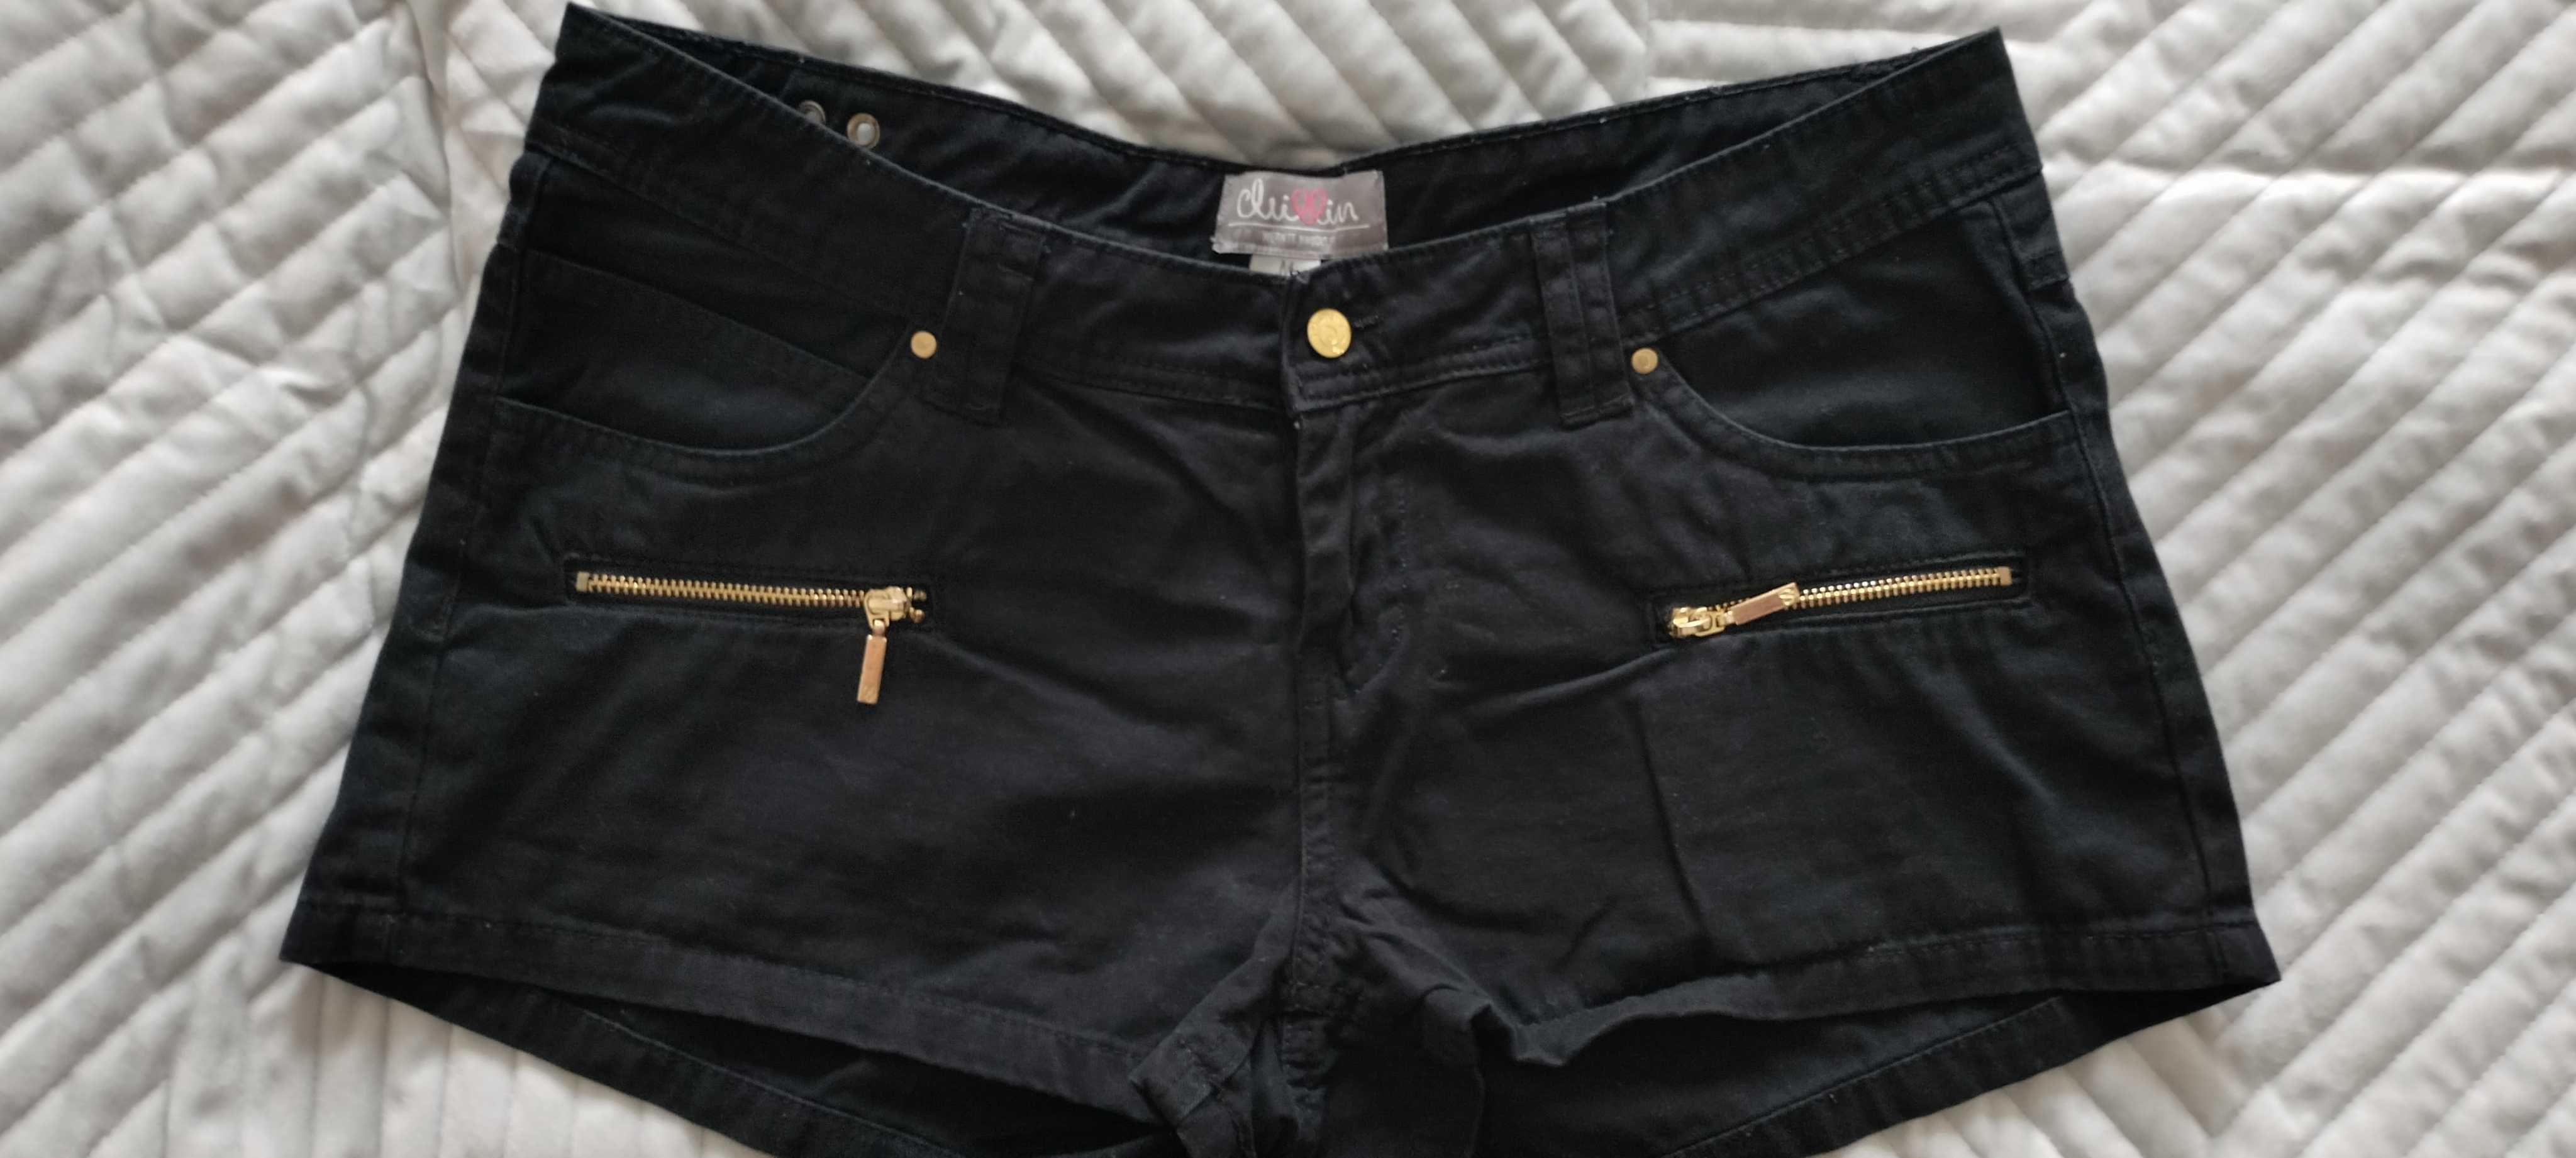 Spodenki, szorty jeansowe czarne M